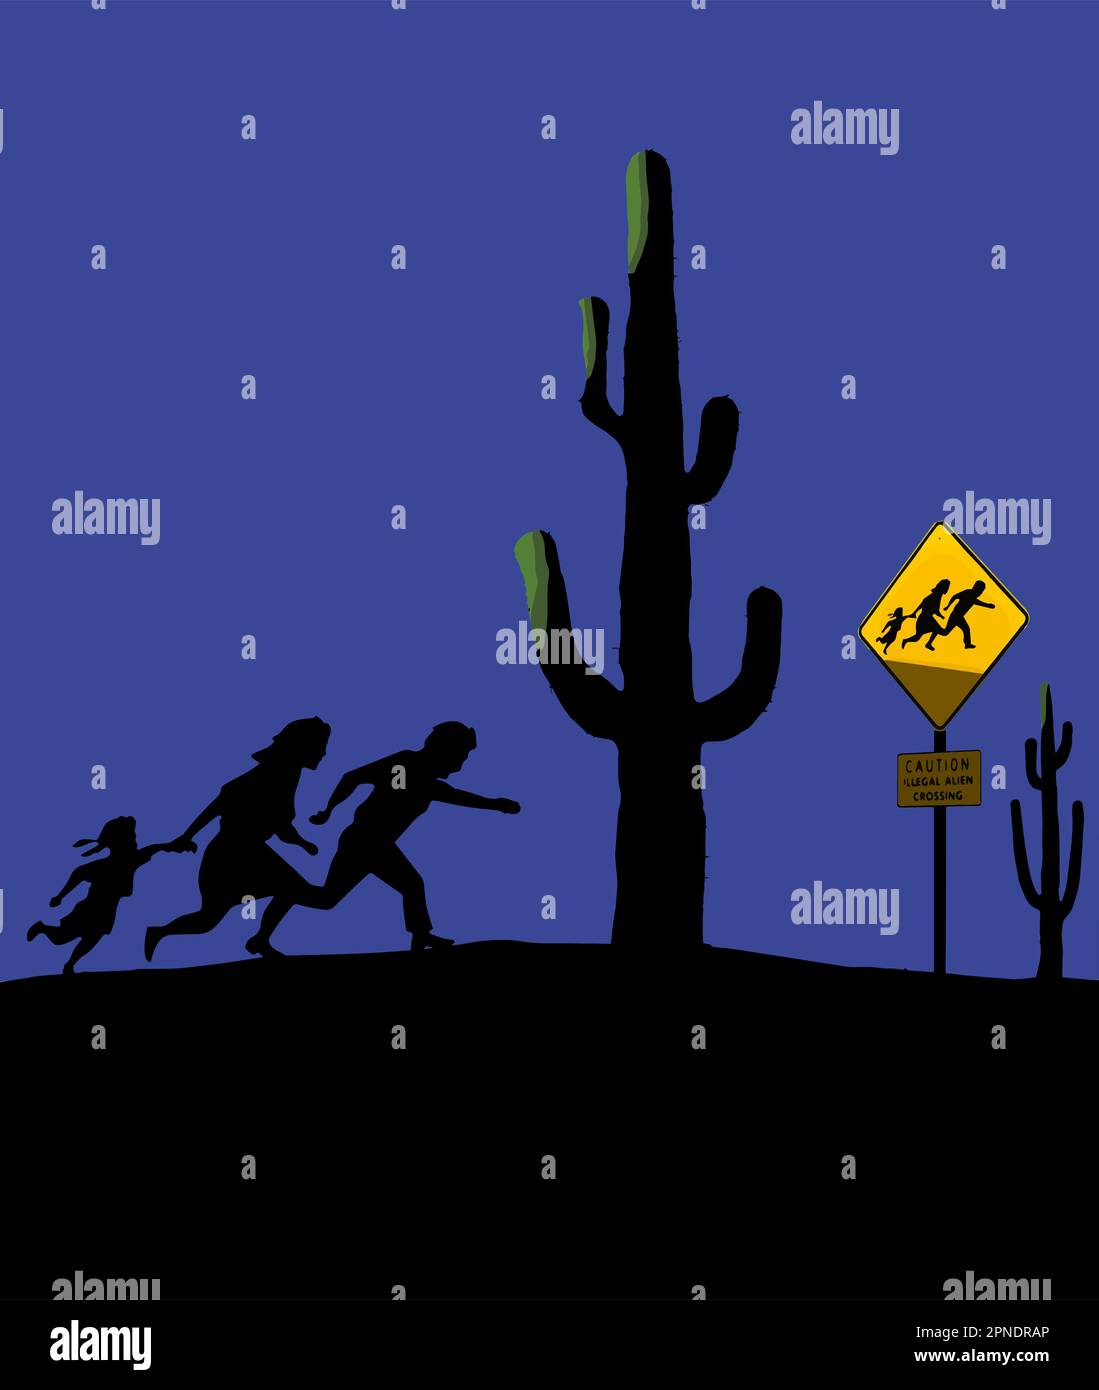 Les immigrants illégaux sont vus courir dans le désert la nuit après le cactus et un signe sur les immigrants illégaux. C'est un vecteur. Illustration de Vecteur